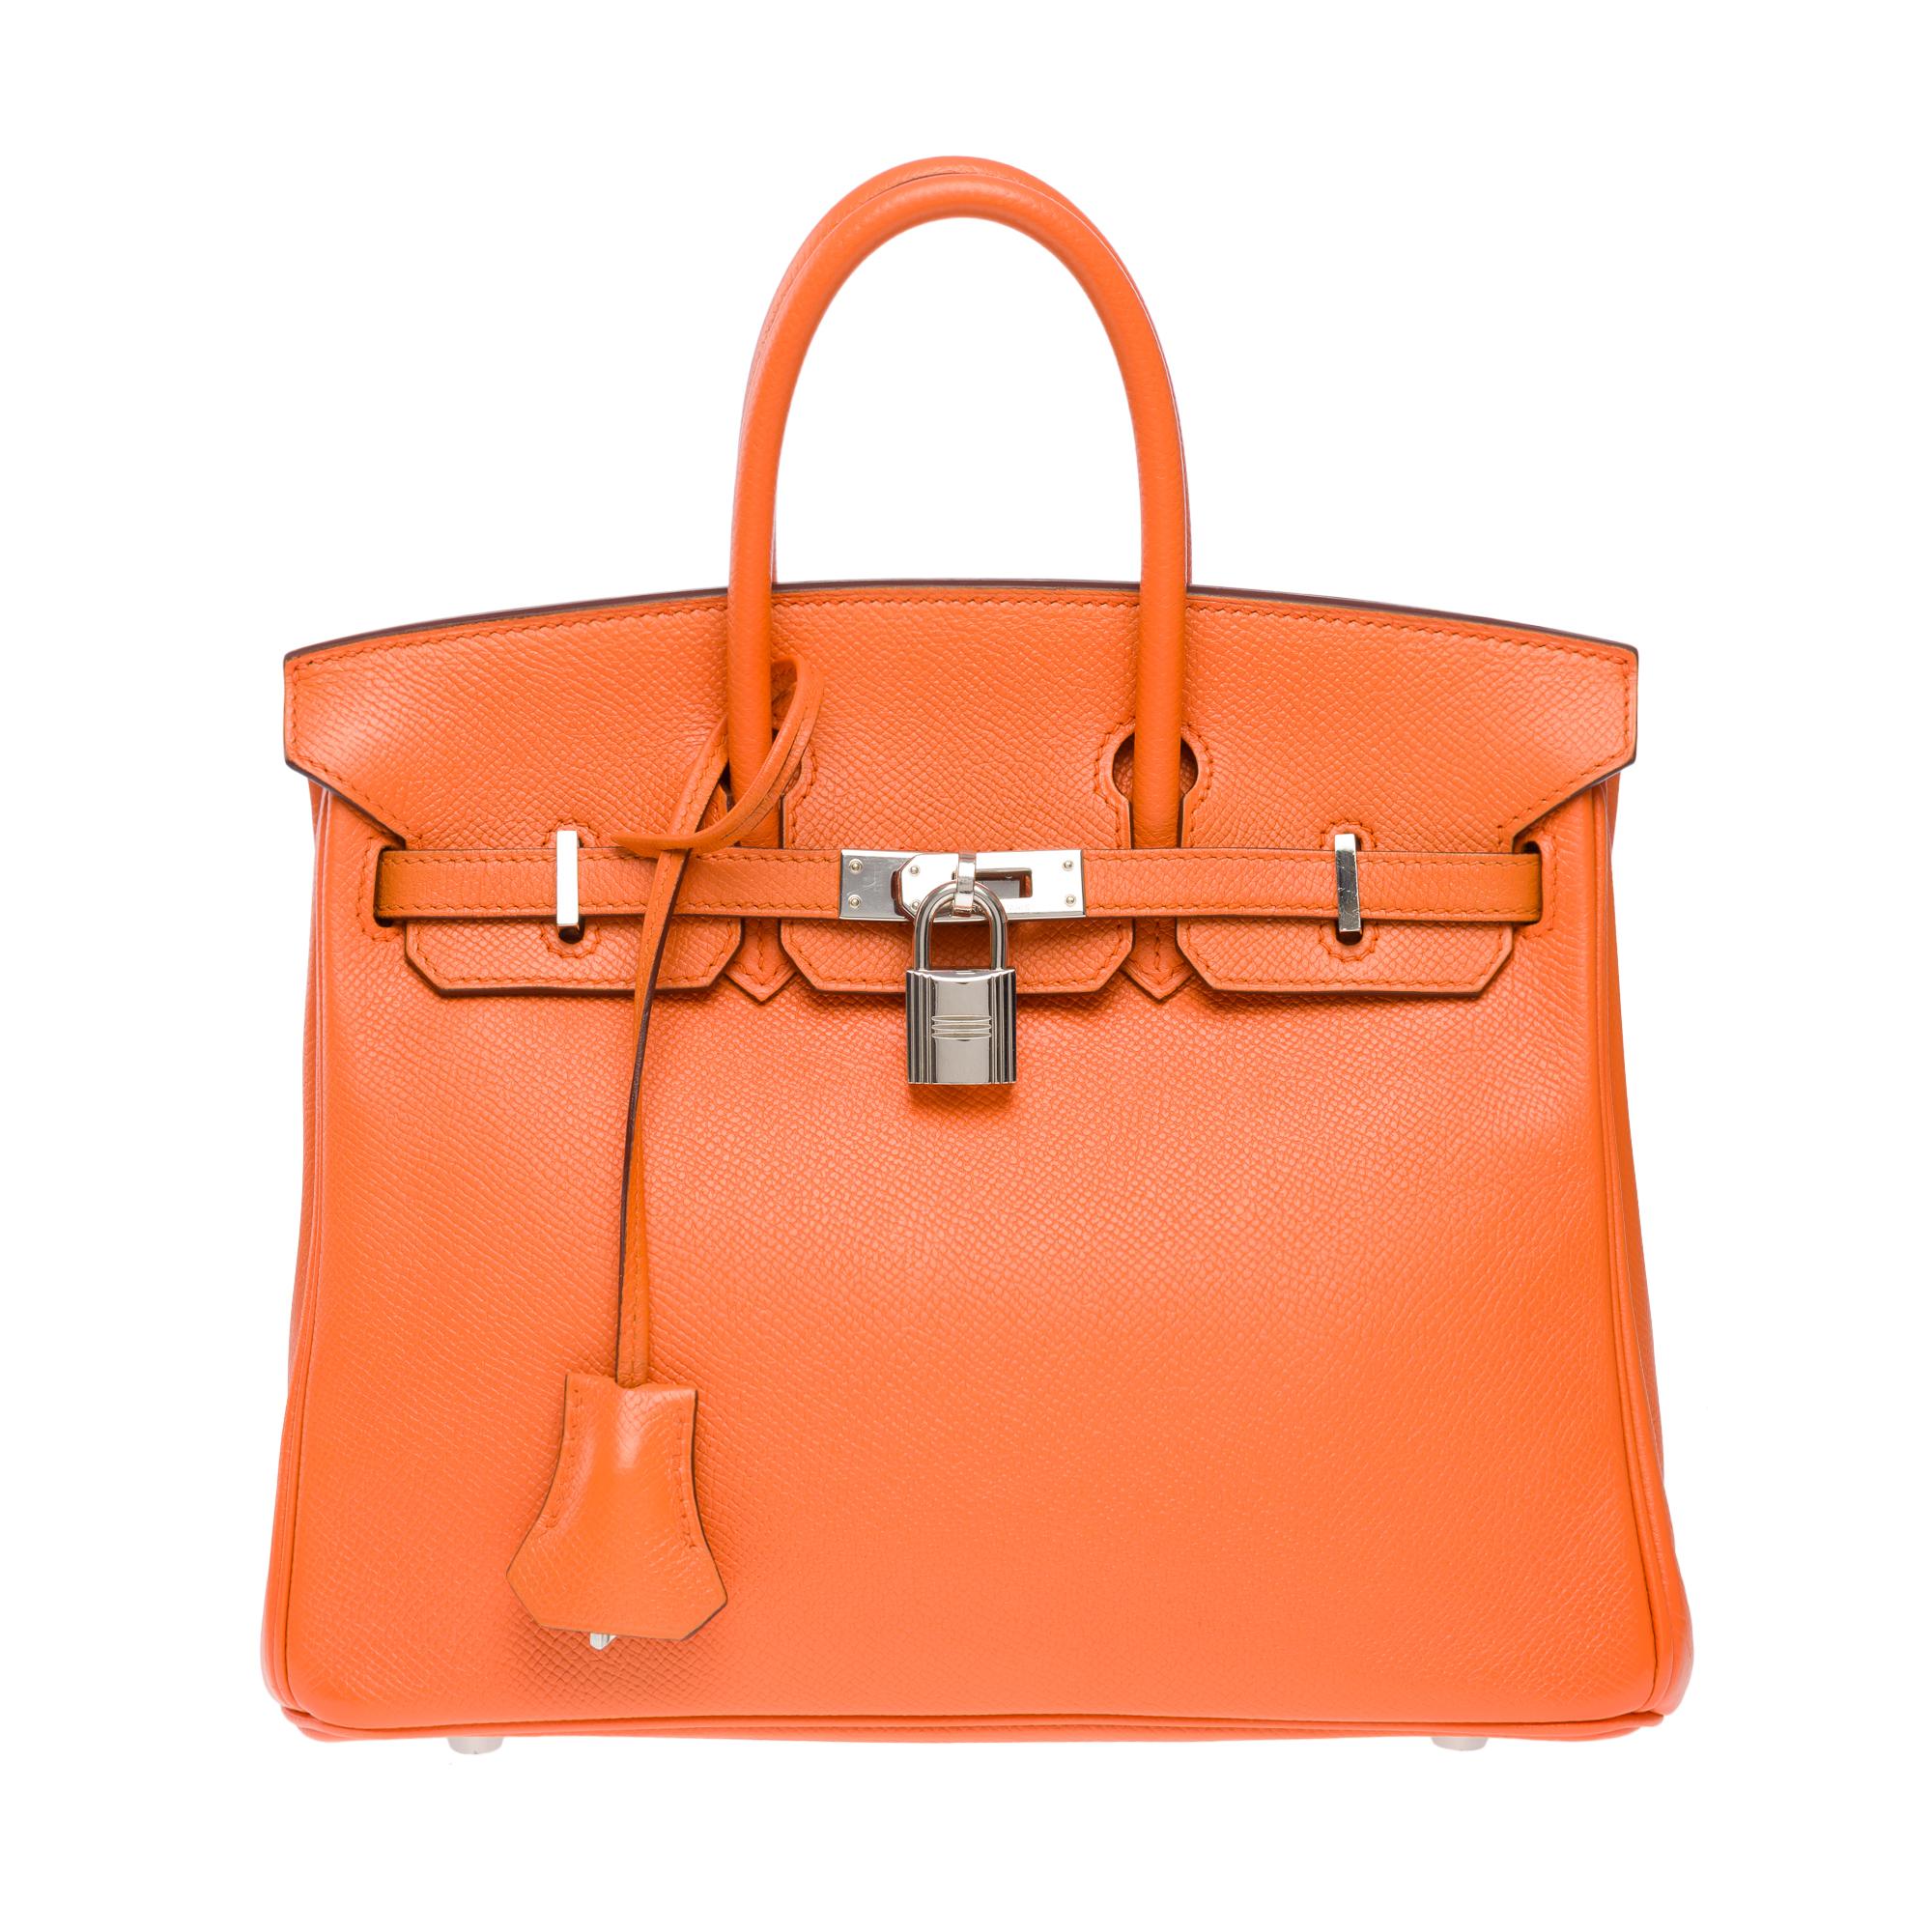 Women's Bright Hermes Birkin 25cm handbag in Orange Epsom calf leather, SHW For Sale